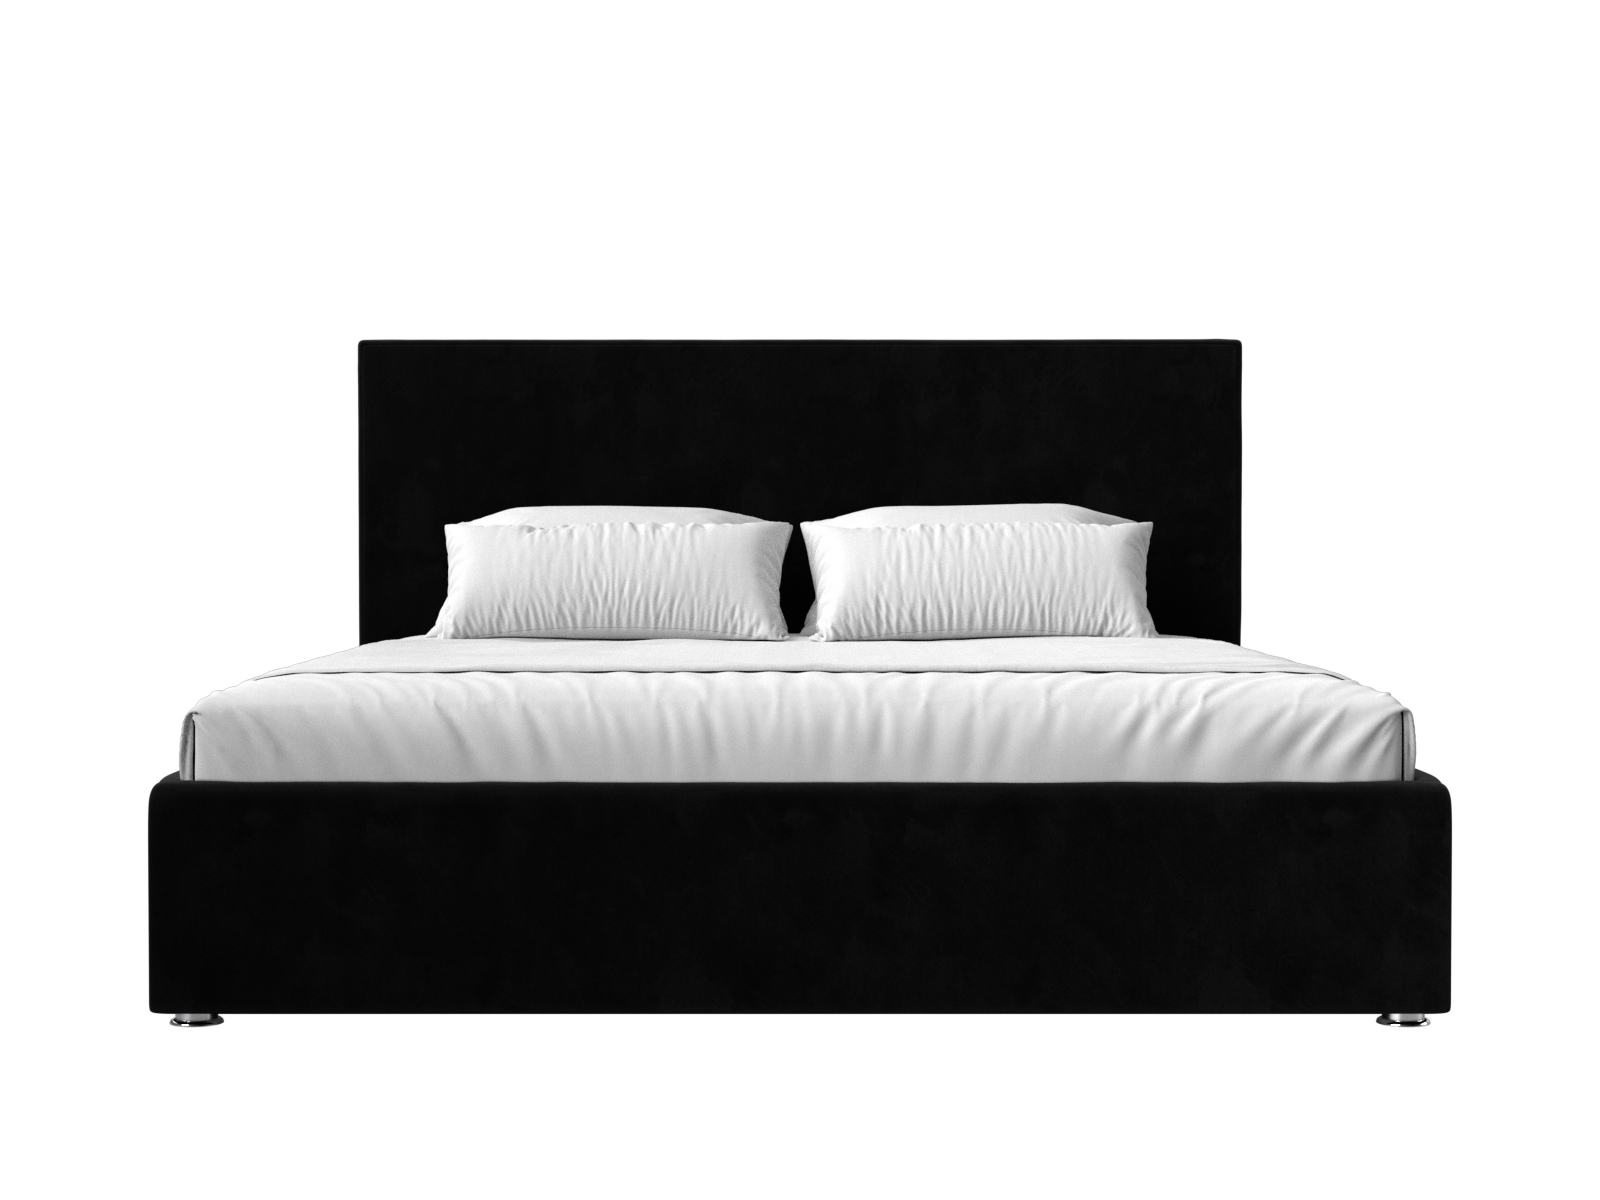 Интерьерная кровать Кариба 200 (Черный)